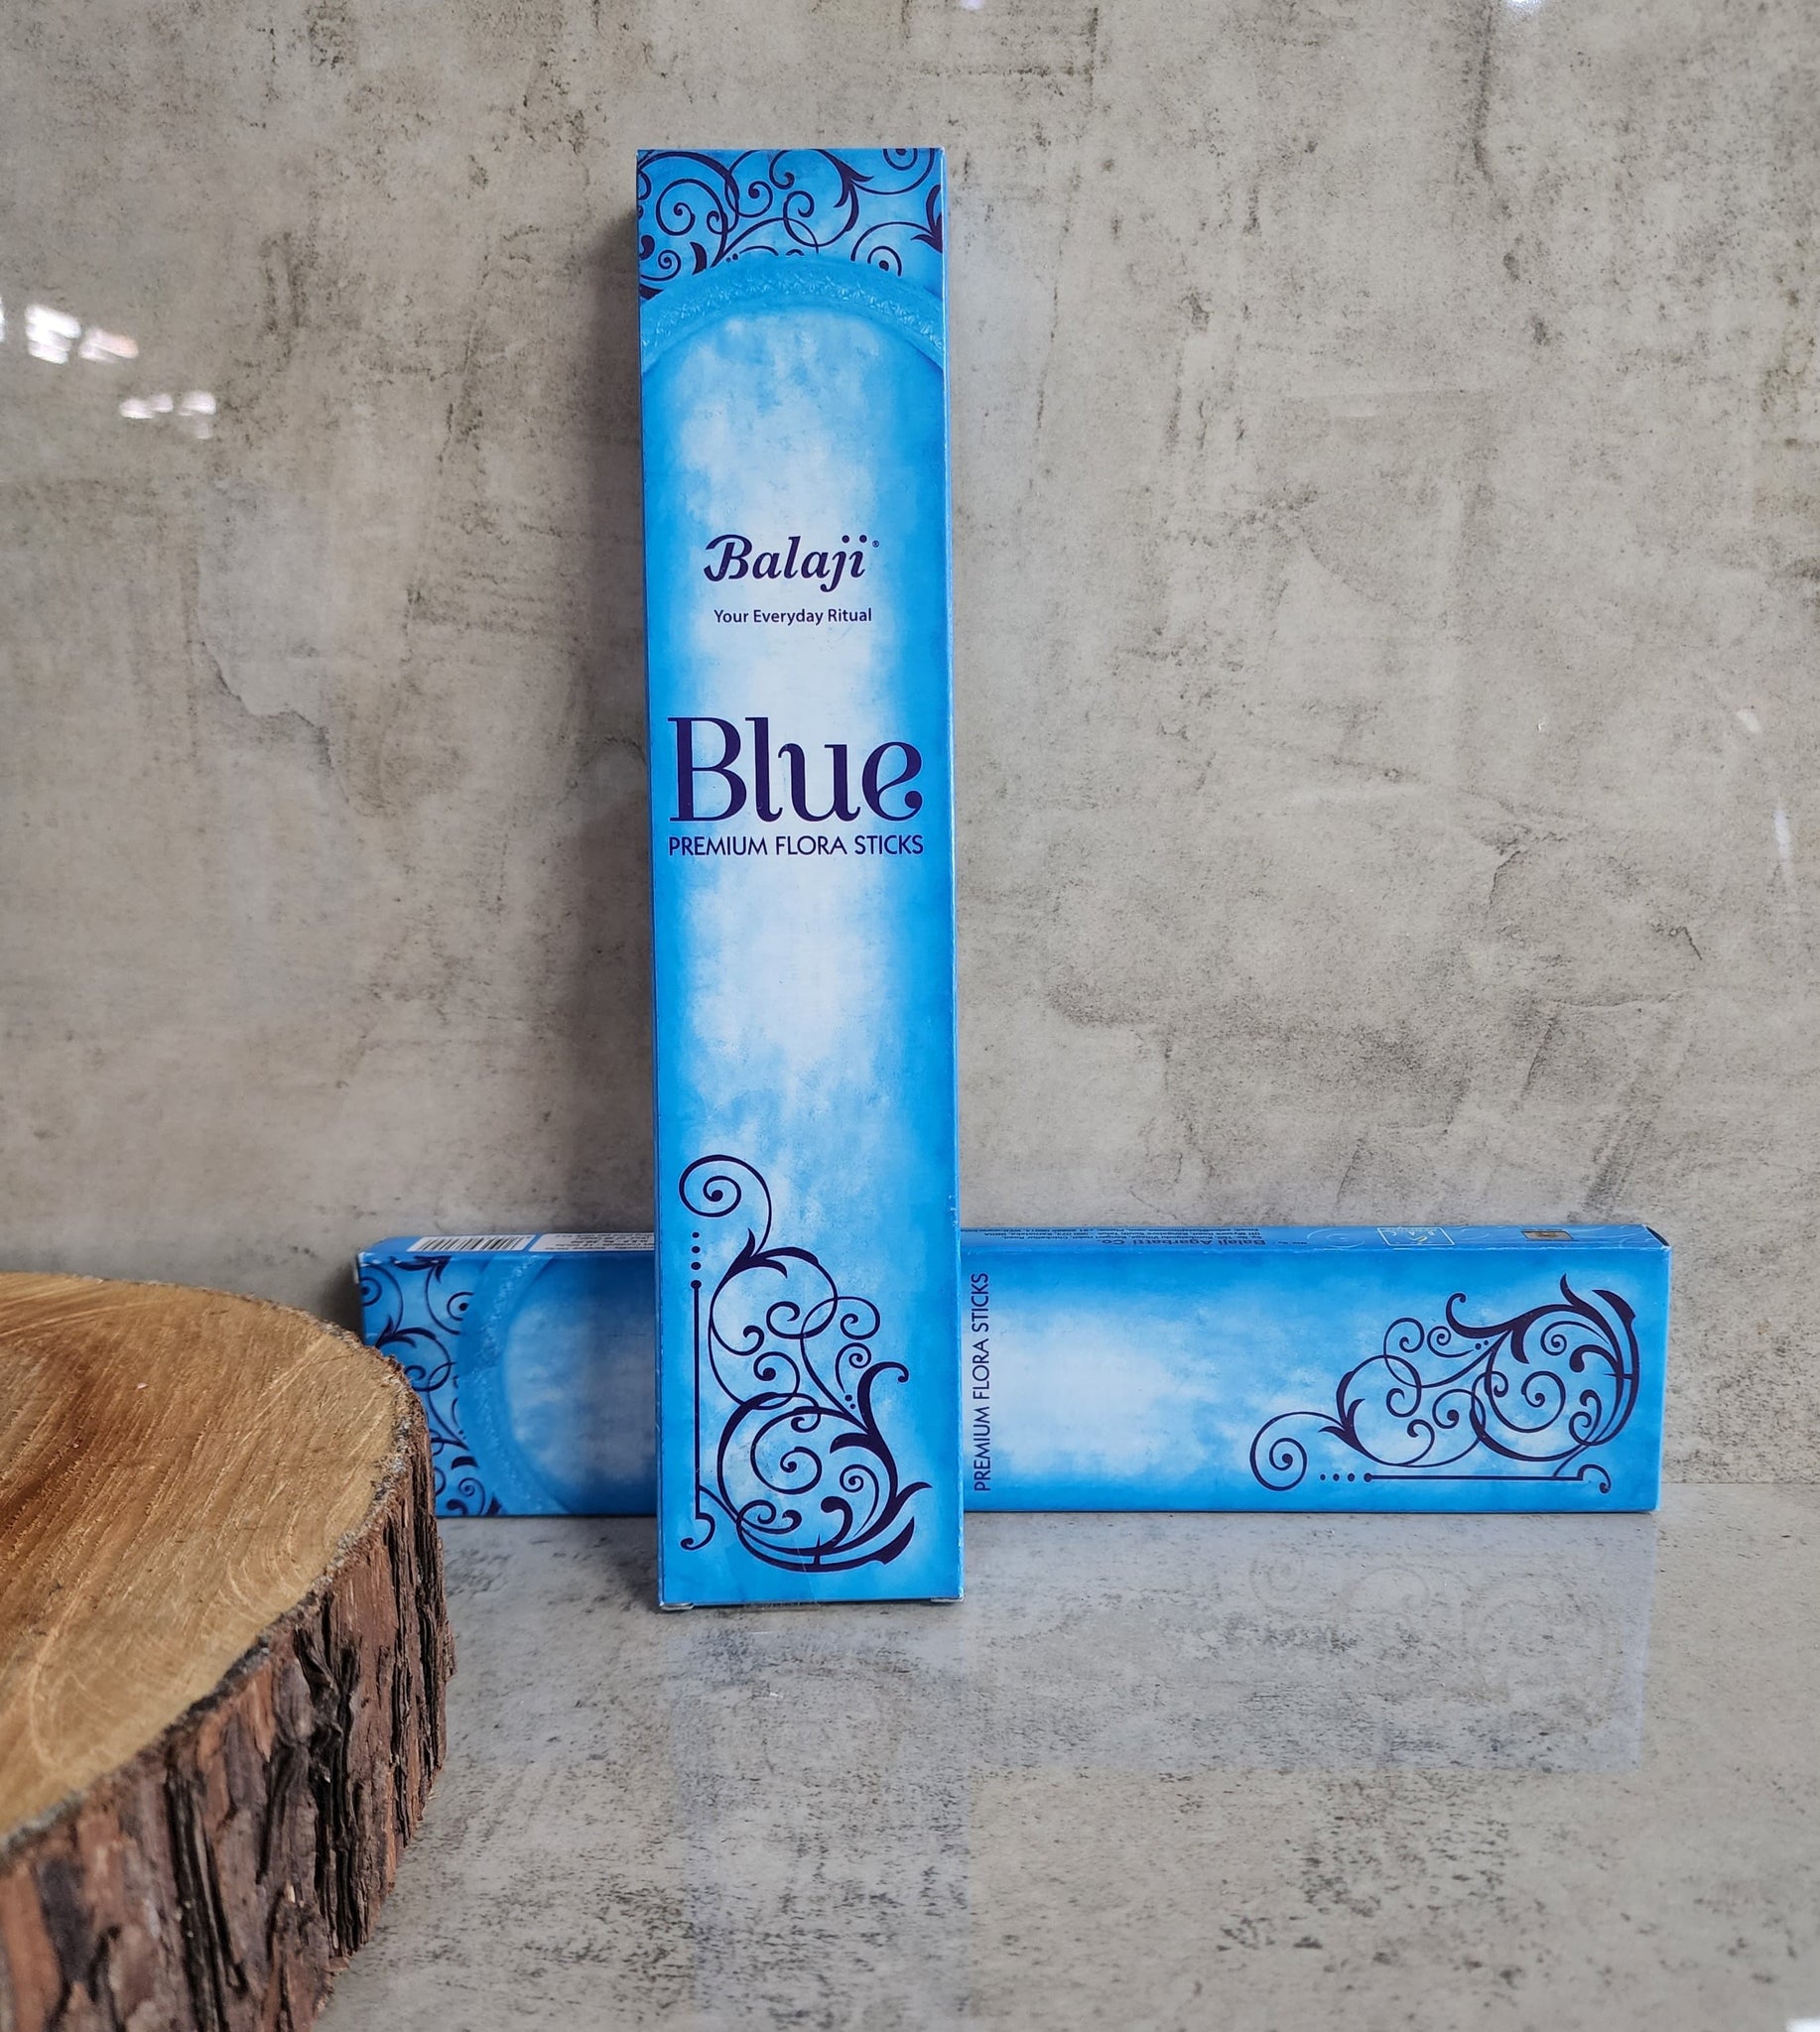 Balaji Blue Incense Sticks